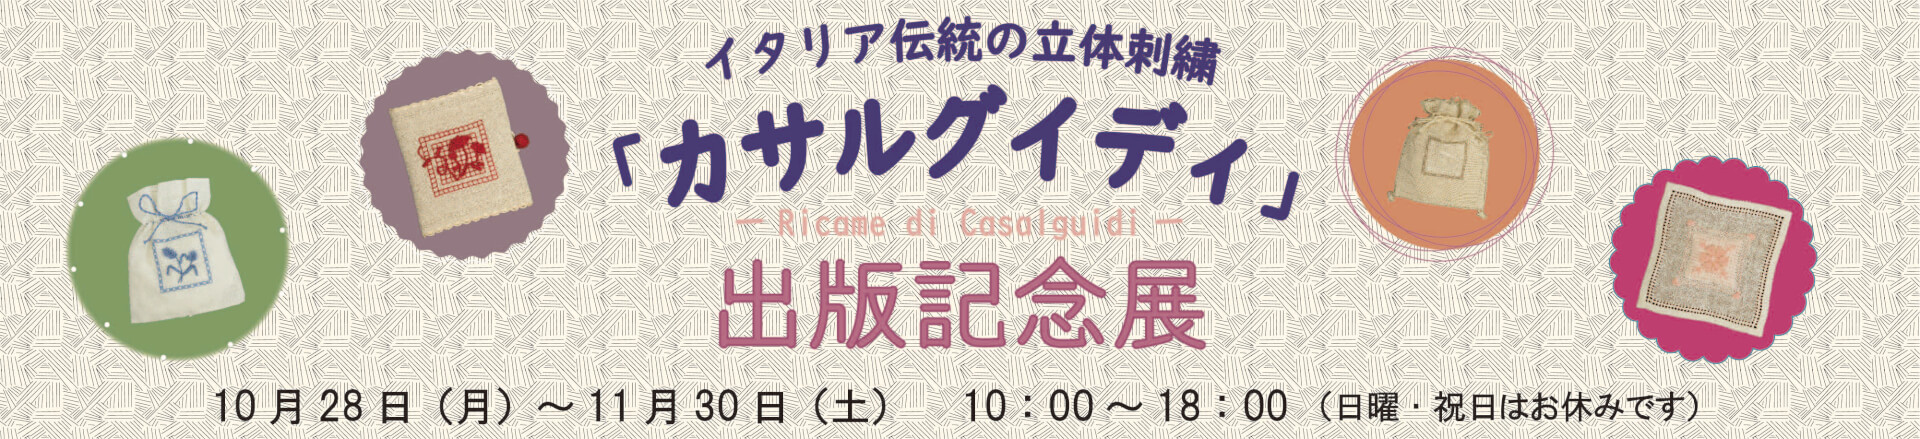 日本アートクラフト協会 イタリア伝統刺繍 カサルグイディ展示会